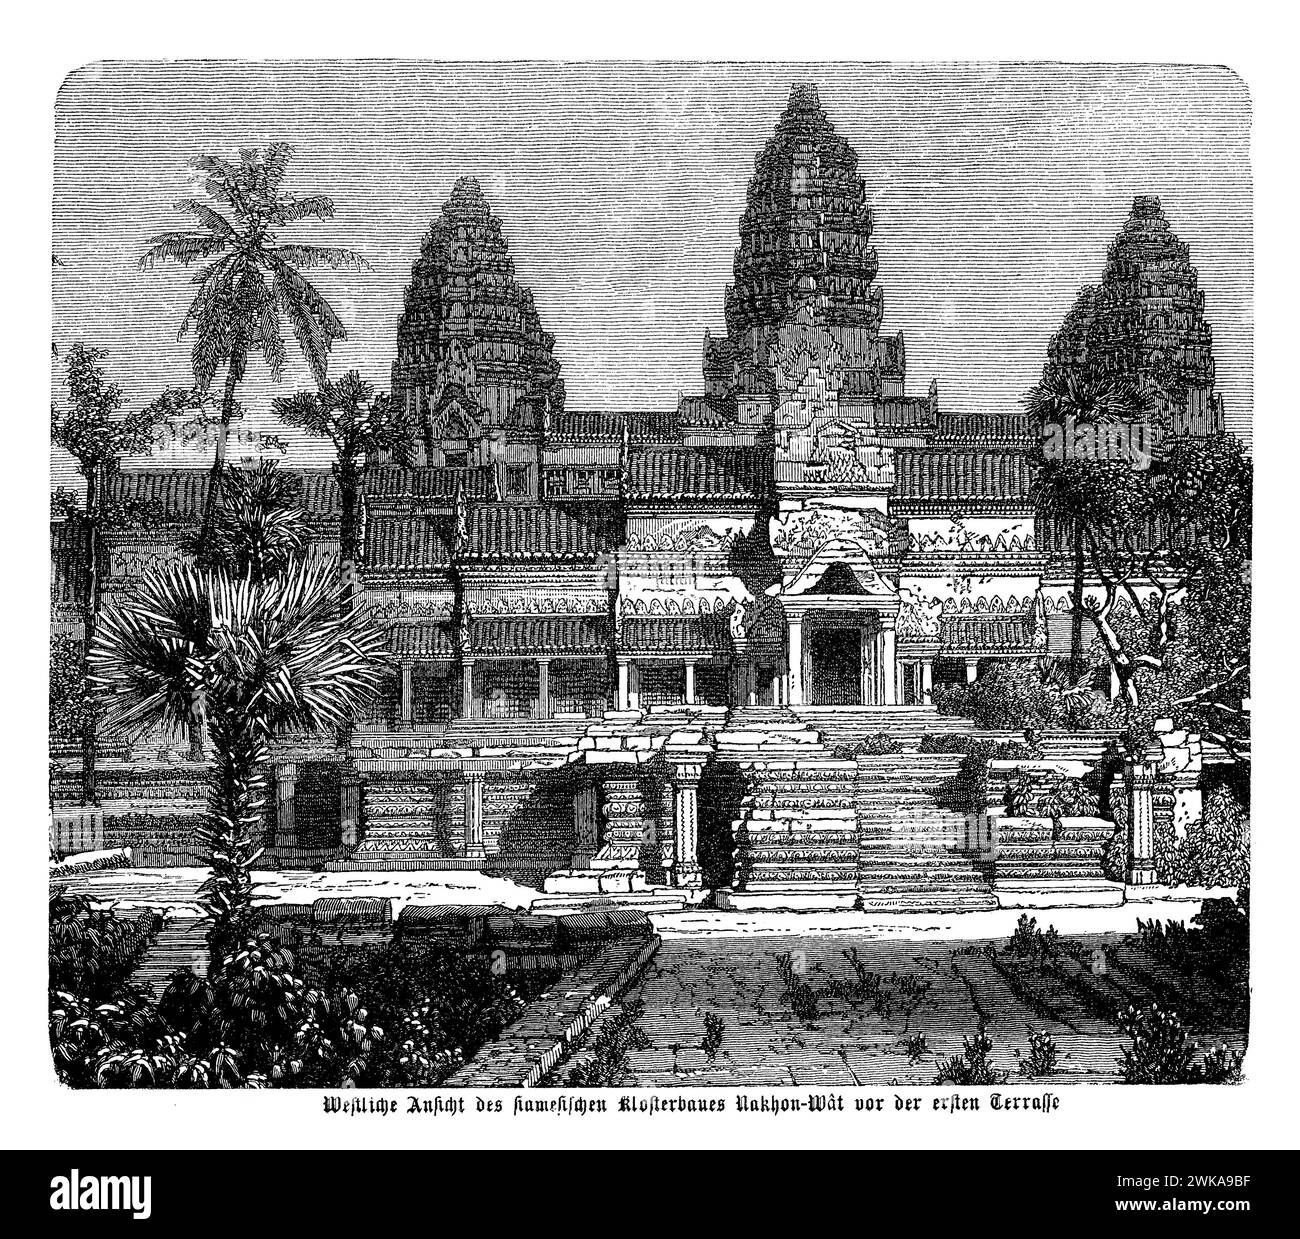 La vista occidentale di Angkor Wat, prima della prima terrazza, offre una splendida prospettiva del monumento religioso più grande del mondo, con le sue iconiche torri simili a loto e il vasto fossato che circonda il complesso del tempio. Angkor Wat è un capolavoro dell'architettura Khmer, noto per i suoi intricati bassorilievi, la costruzione in arenaria e l'armonia del suo design, che simboleggia la cosmologia indù. Si trova ad Angkor, l'antica capitale dell'Impero Khmer Foto Stock